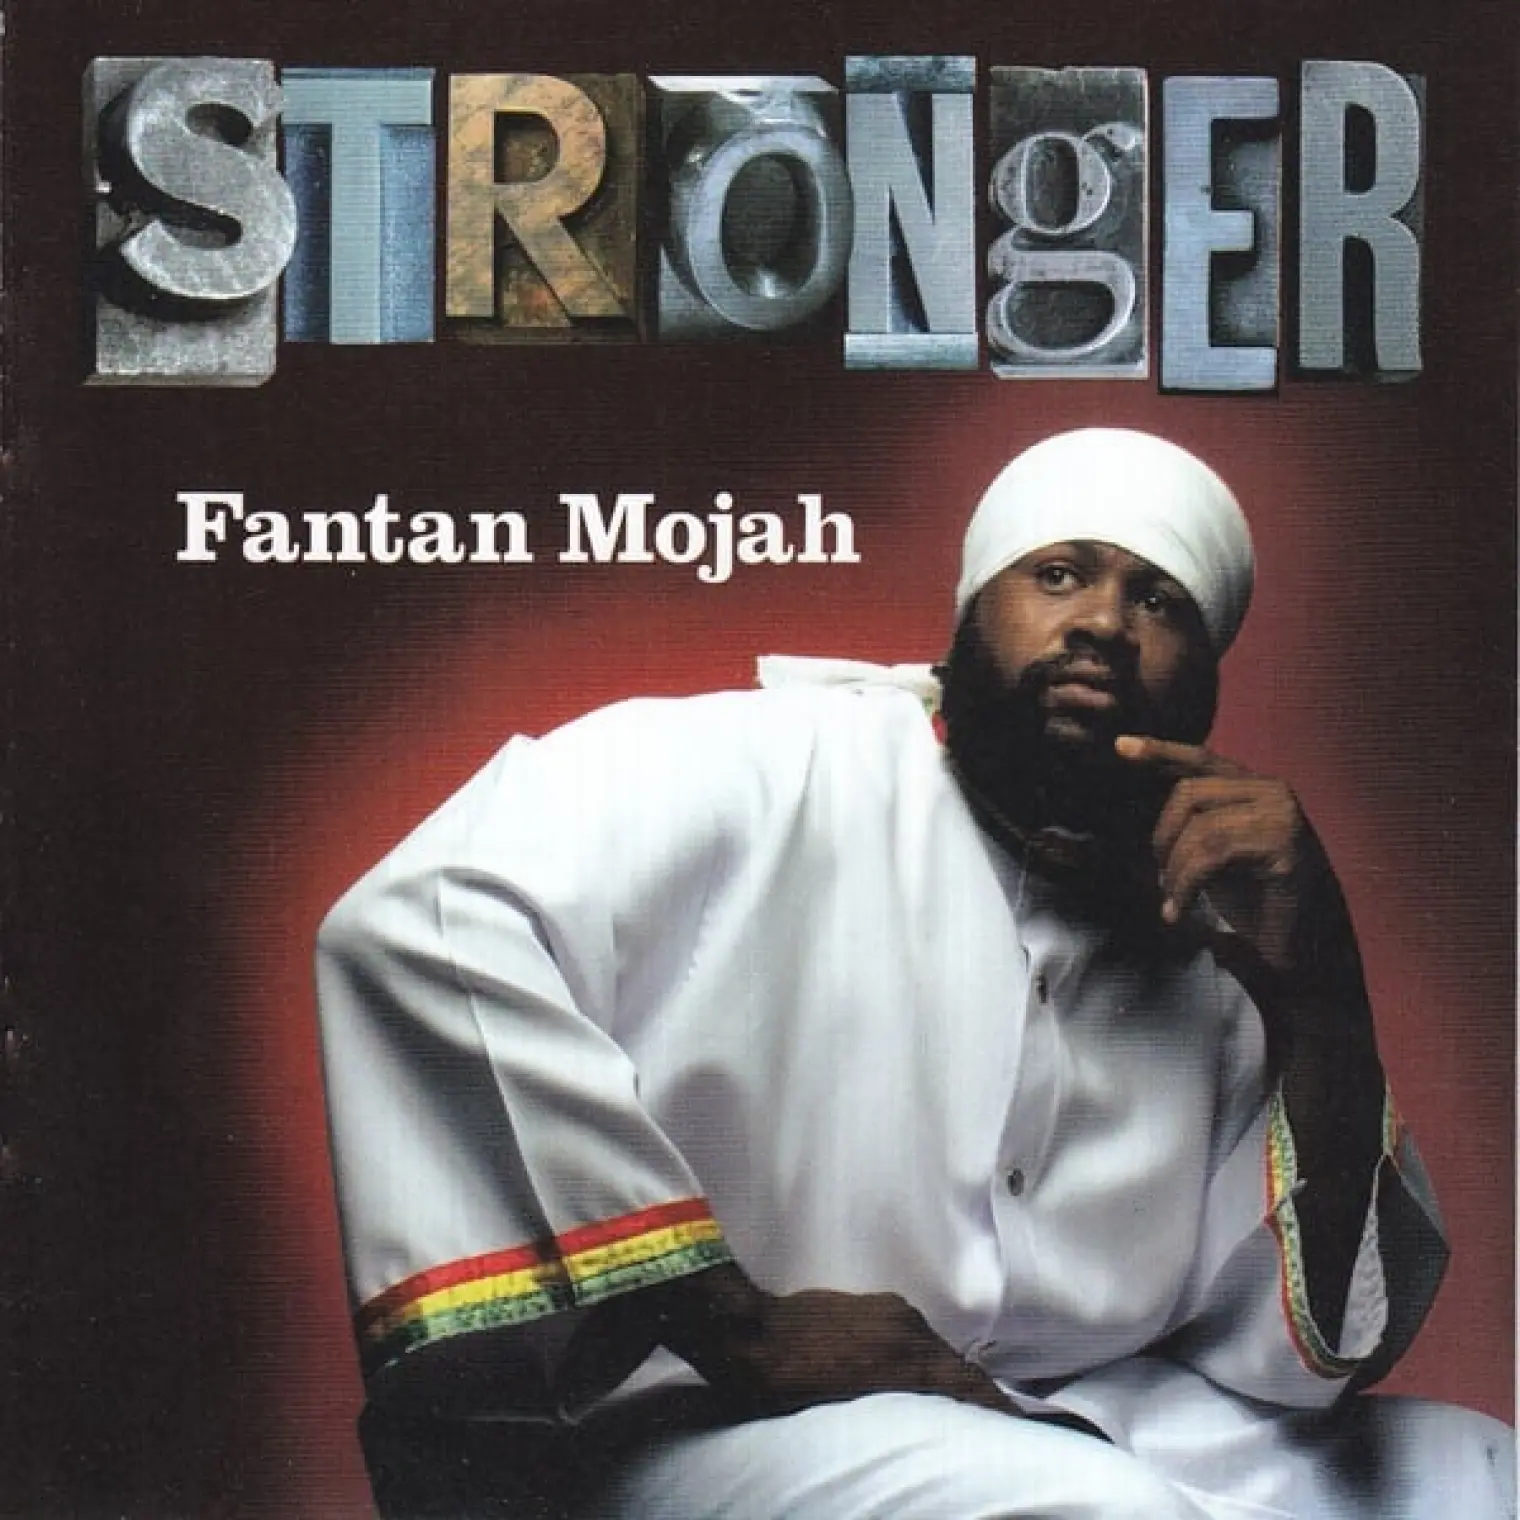 Stronger -  Fantan Mojah 